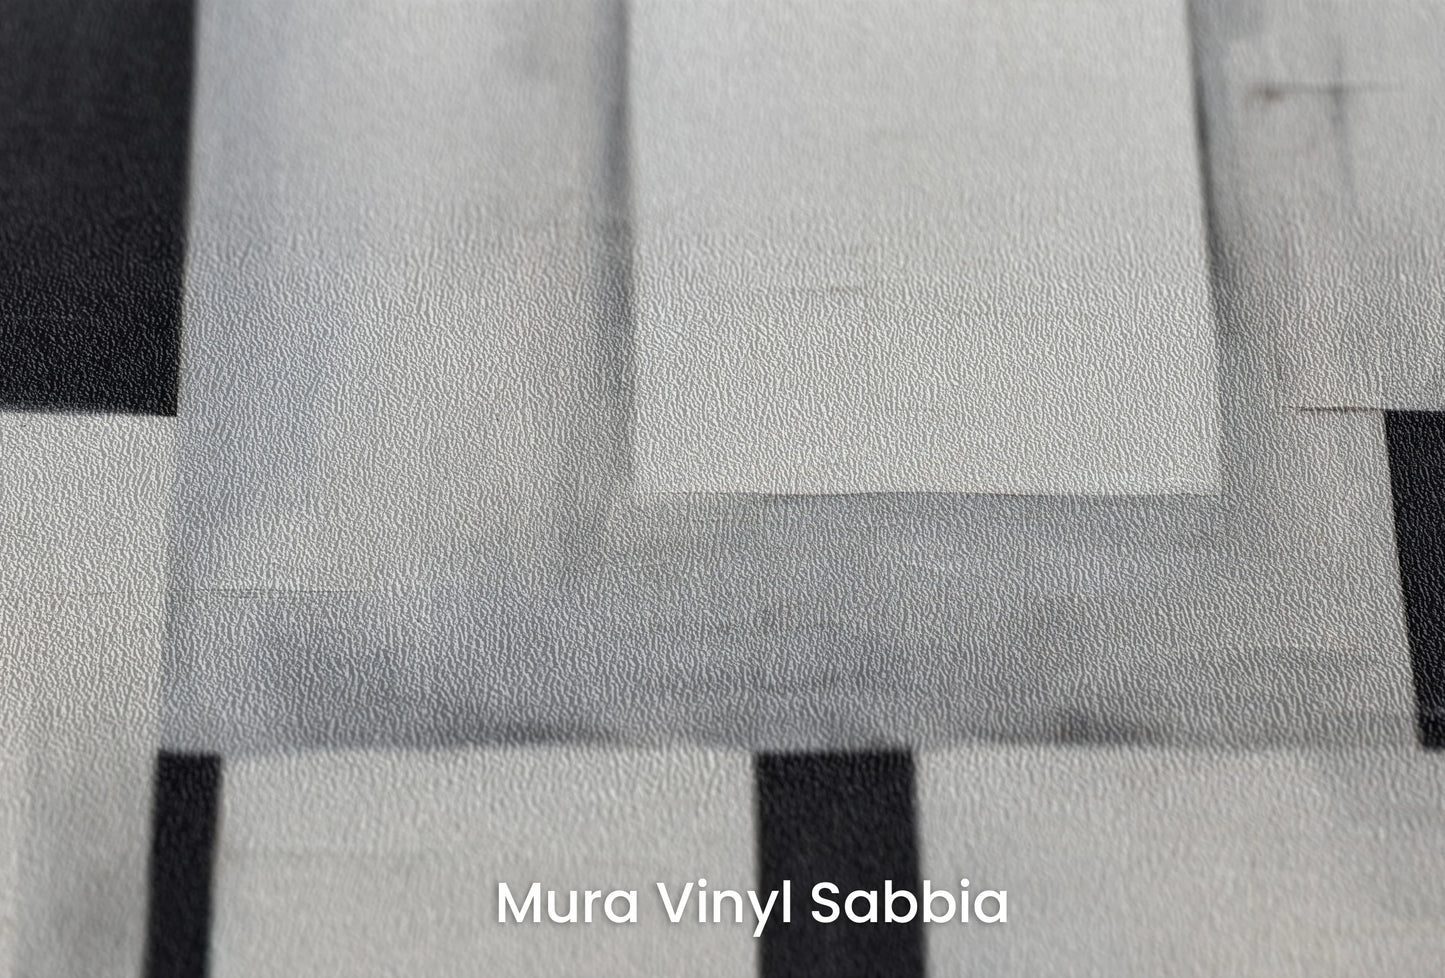 Zbliżenie na artystyczną fototapetę o nazwie Monochrome Blocks na podłożu Mura Vinyl Sabbia struktura grubego ziarna piasku.